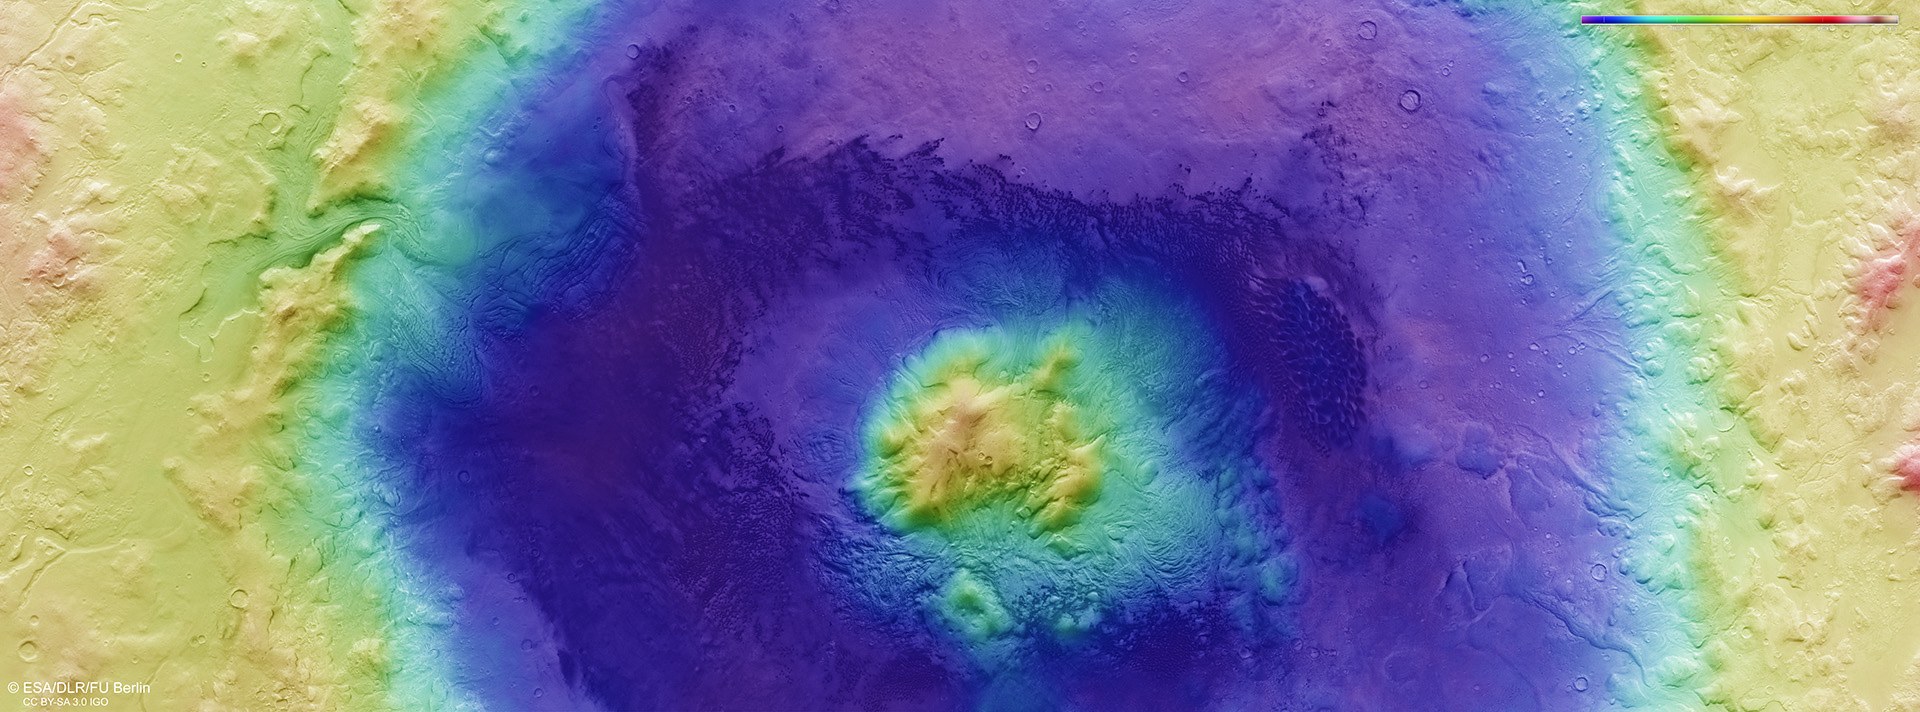 Topographische Bildkarte des Einschlagskraters Moreux